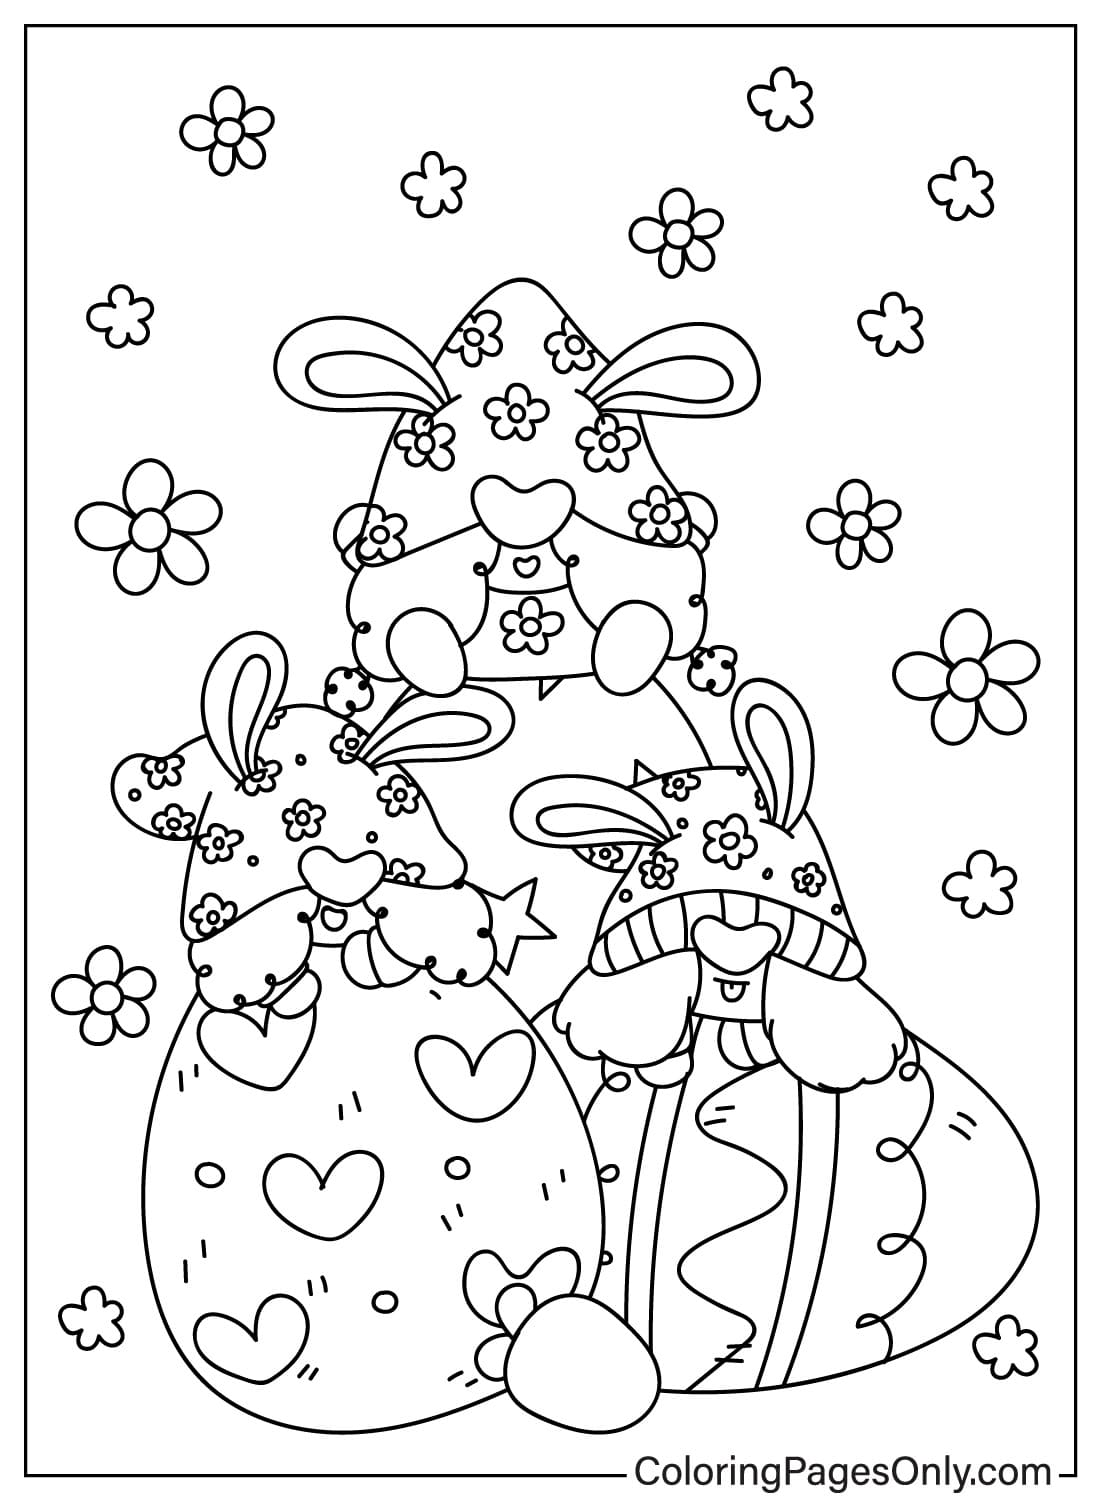 Página para colorear de Gnomo de Pascua de Gnomo de Pascua